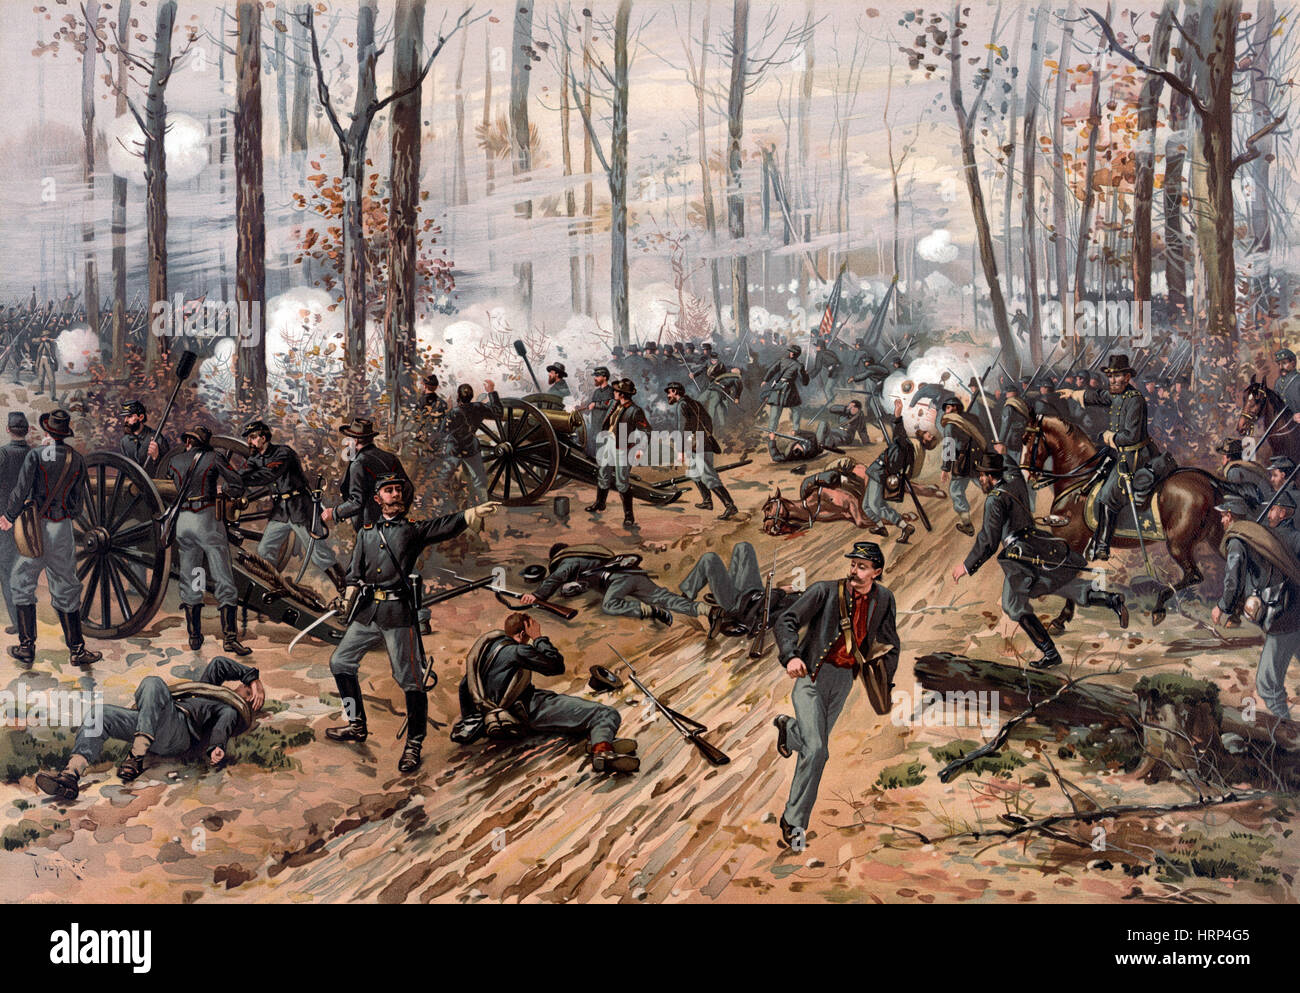 La Guerra Civil Americana, la batalla de Shiloh, 1862 Foto de stock